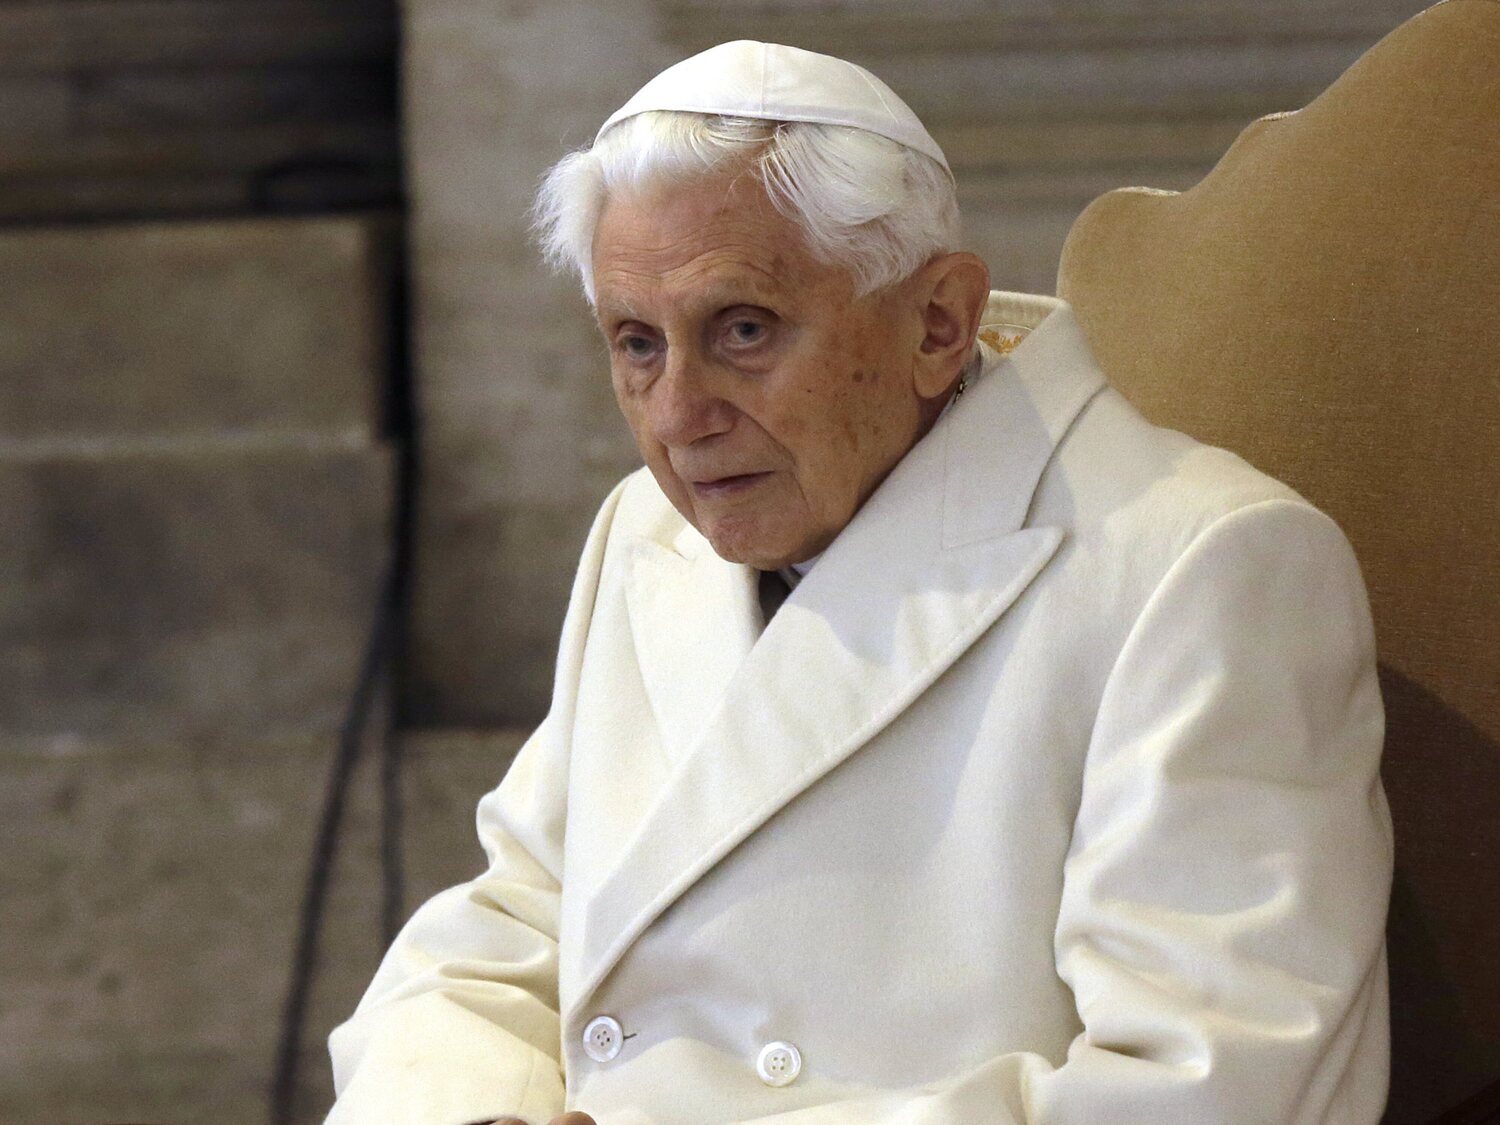 El Papa Benedicto XVI será juzgado por presunto encubrimiento de abusos sexuales contra un menor